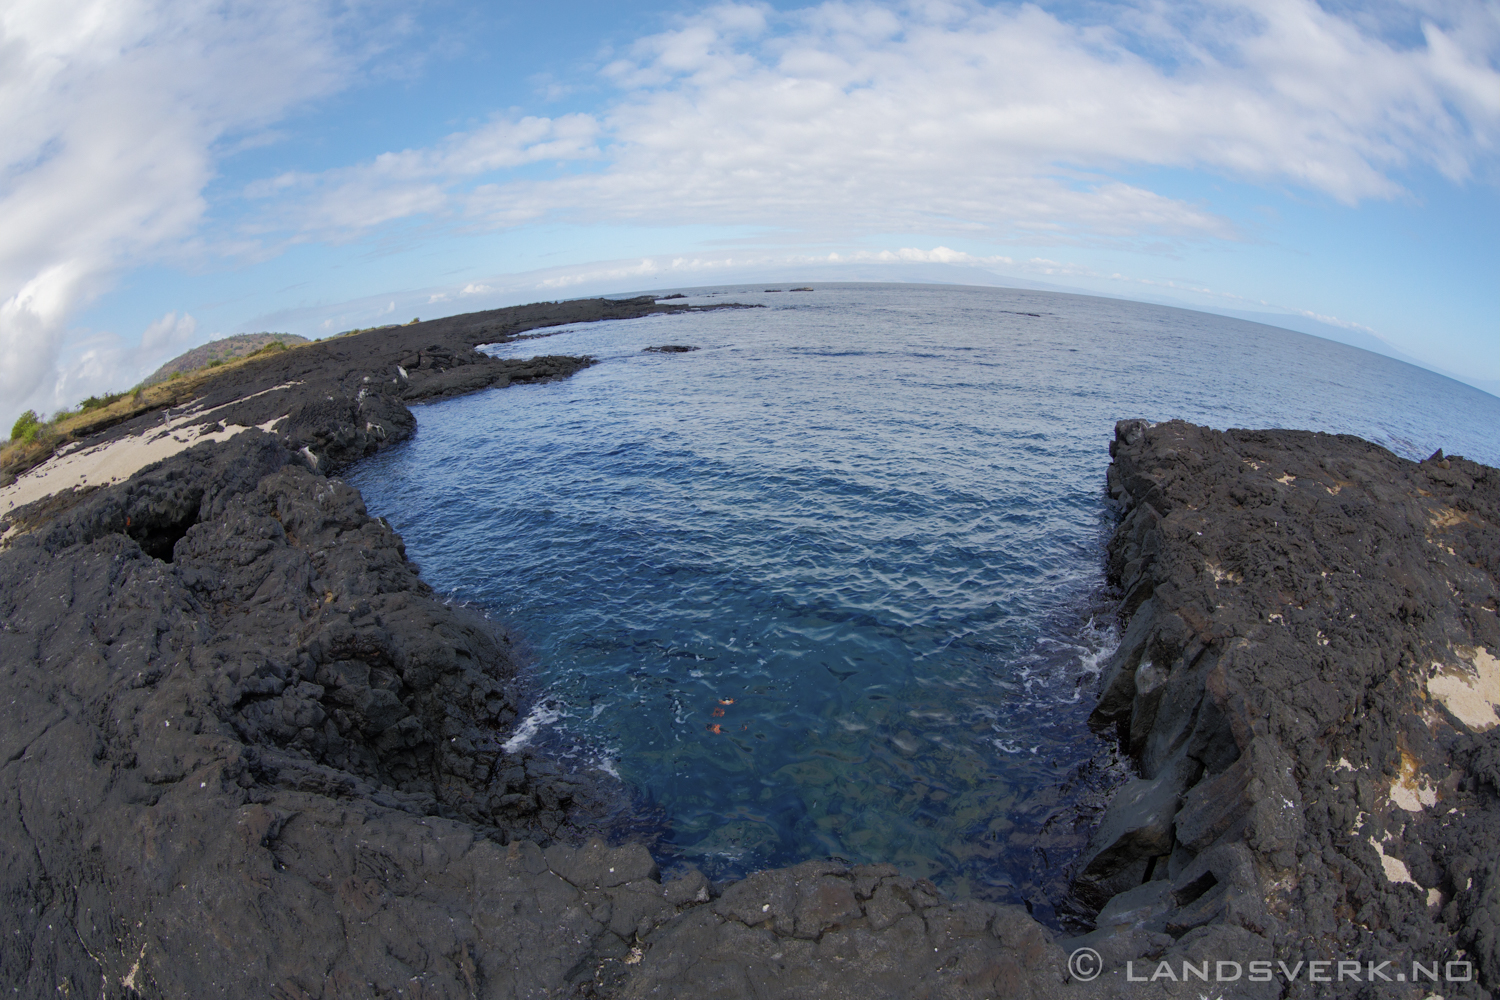 Puerto Egas, Isla Santiago, Galapagos. 

(Canon EOS 5D Mark III / Canon EF 8-15mm f/4 L USM Fisheye)